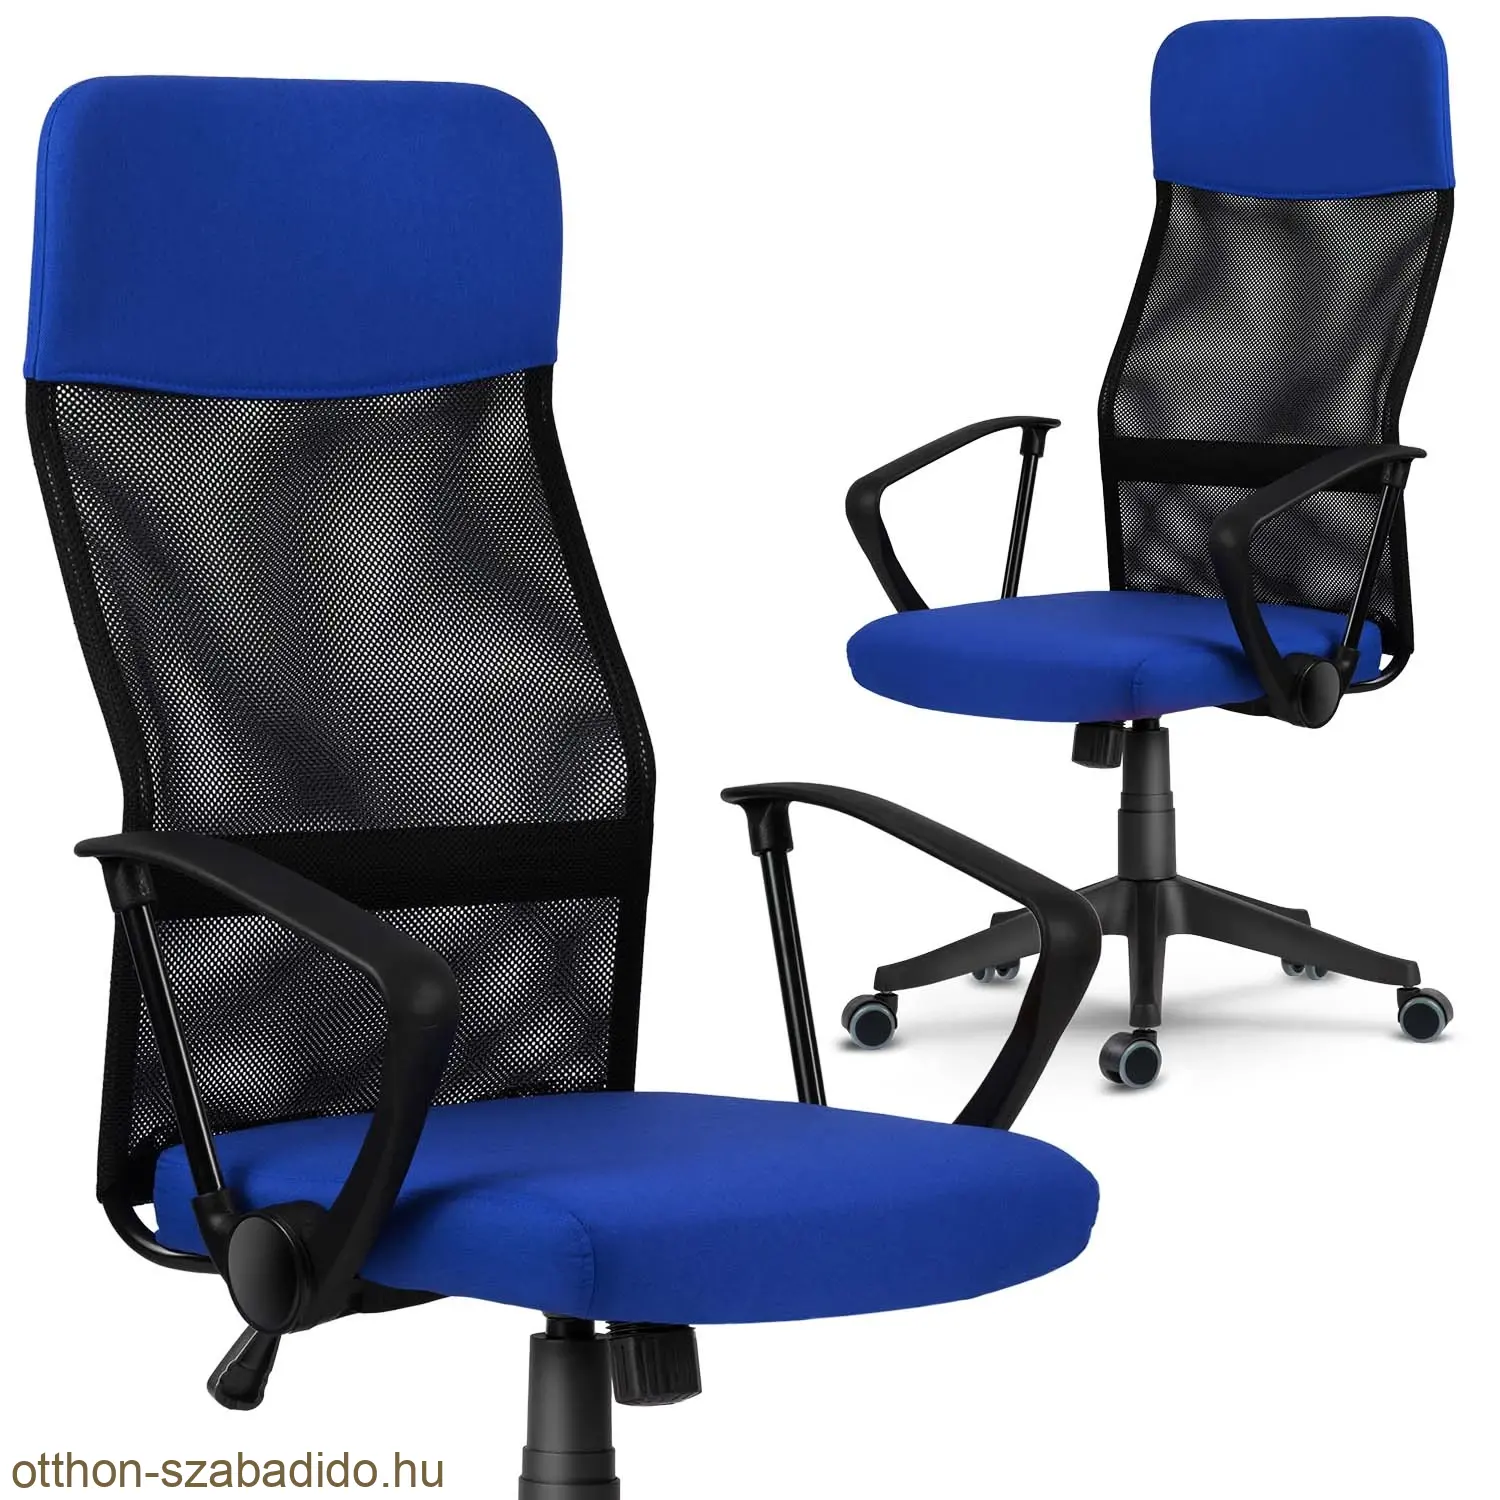 SOFOTEL mikrohálós irodai szék  Sydney kék - fekete